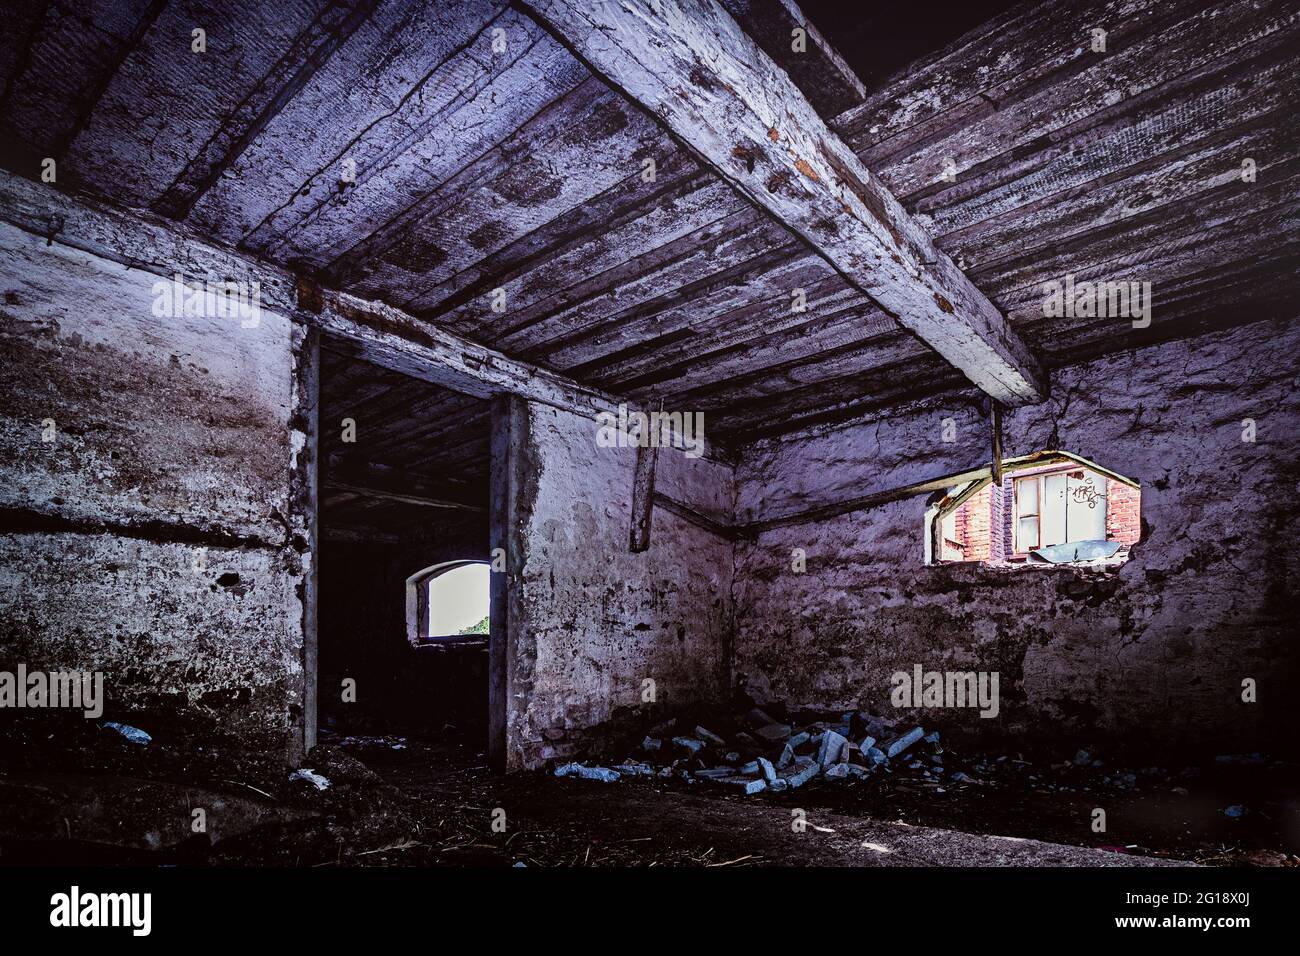 Alptraum Horror Keller in einer alten, verlassene Scheune im 'The Blair Witch Project' Stil. Leerstehende, unbewohnte Architektur, Abandoned Place Stock Photo